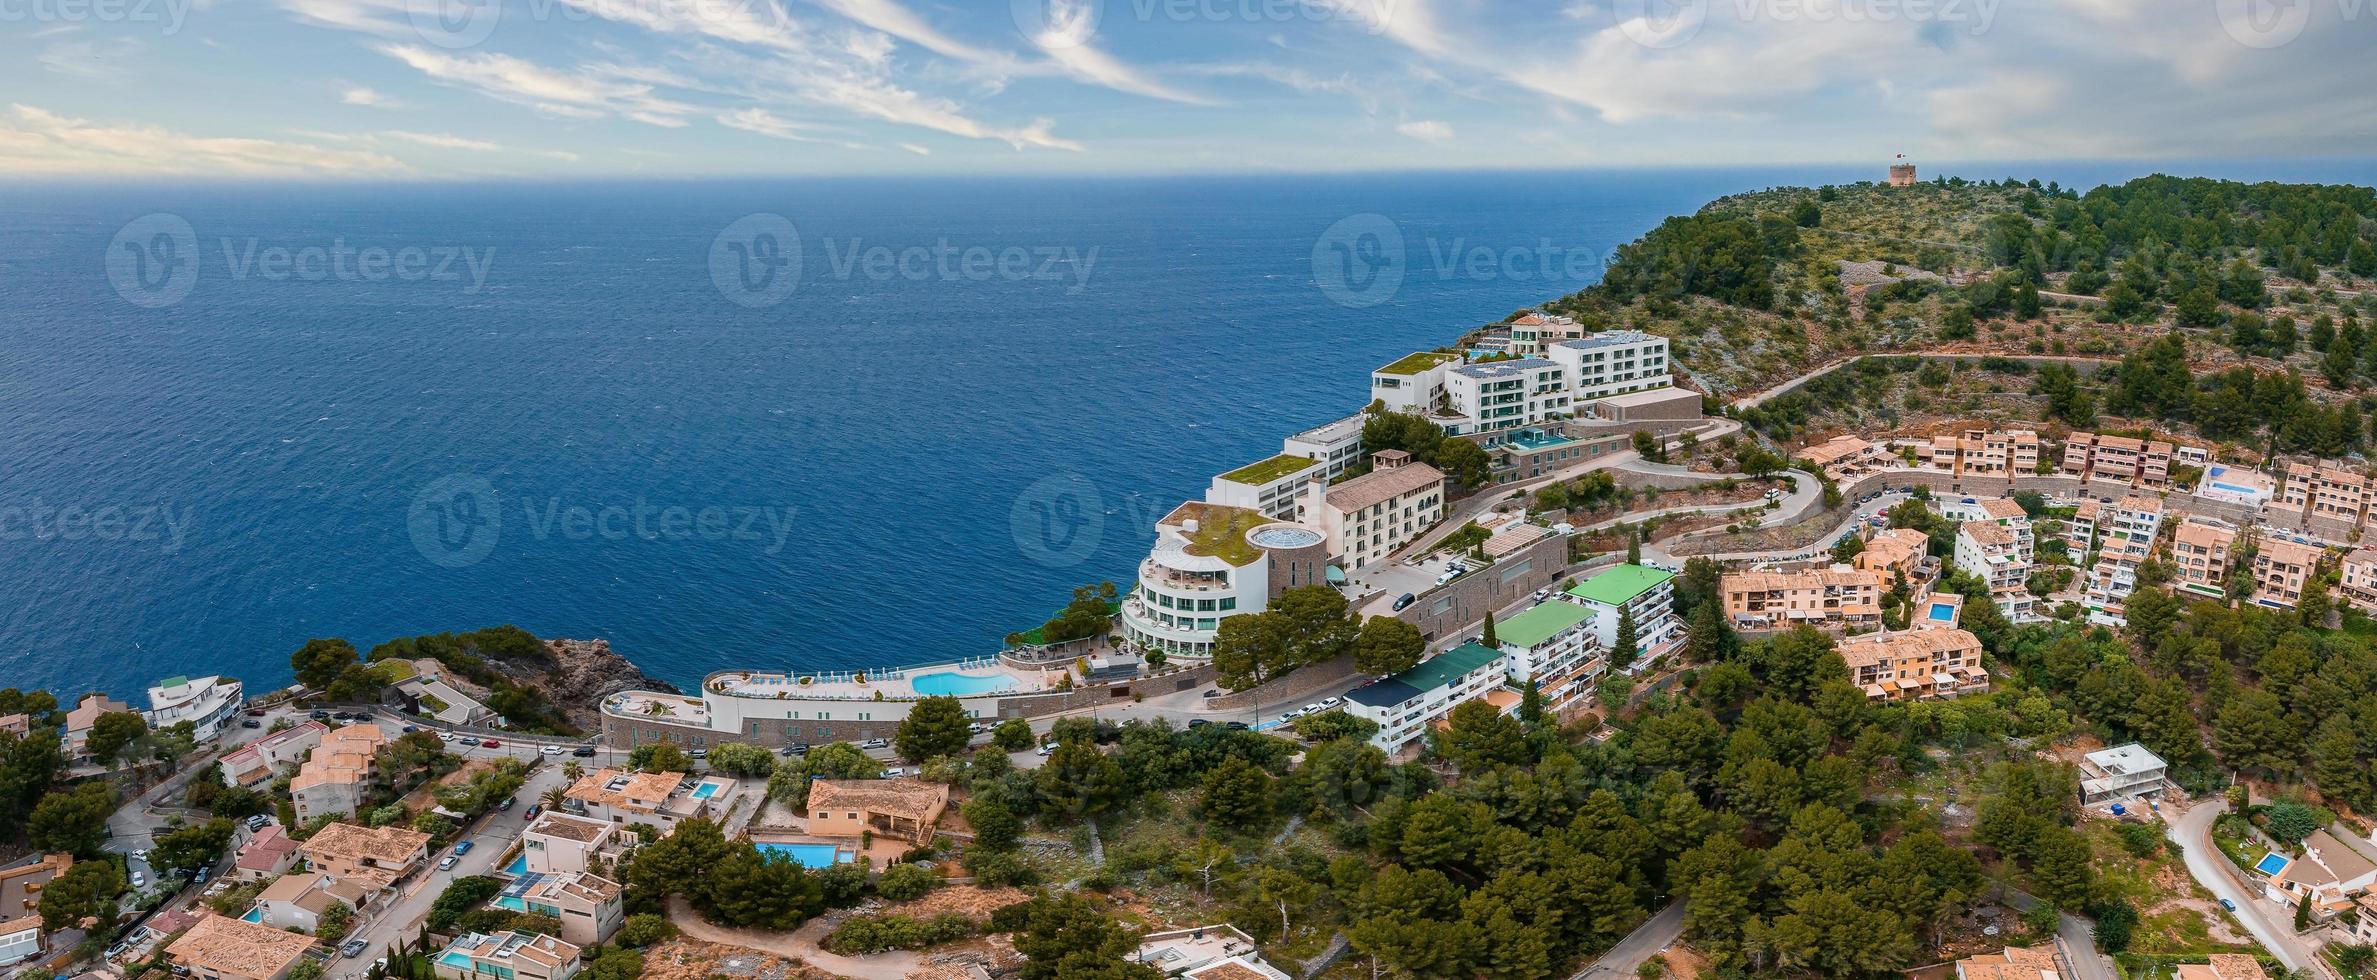 vista aérea del hotel de lujo cliff house en lo alto del acantilado en la isla de mallorca. foto